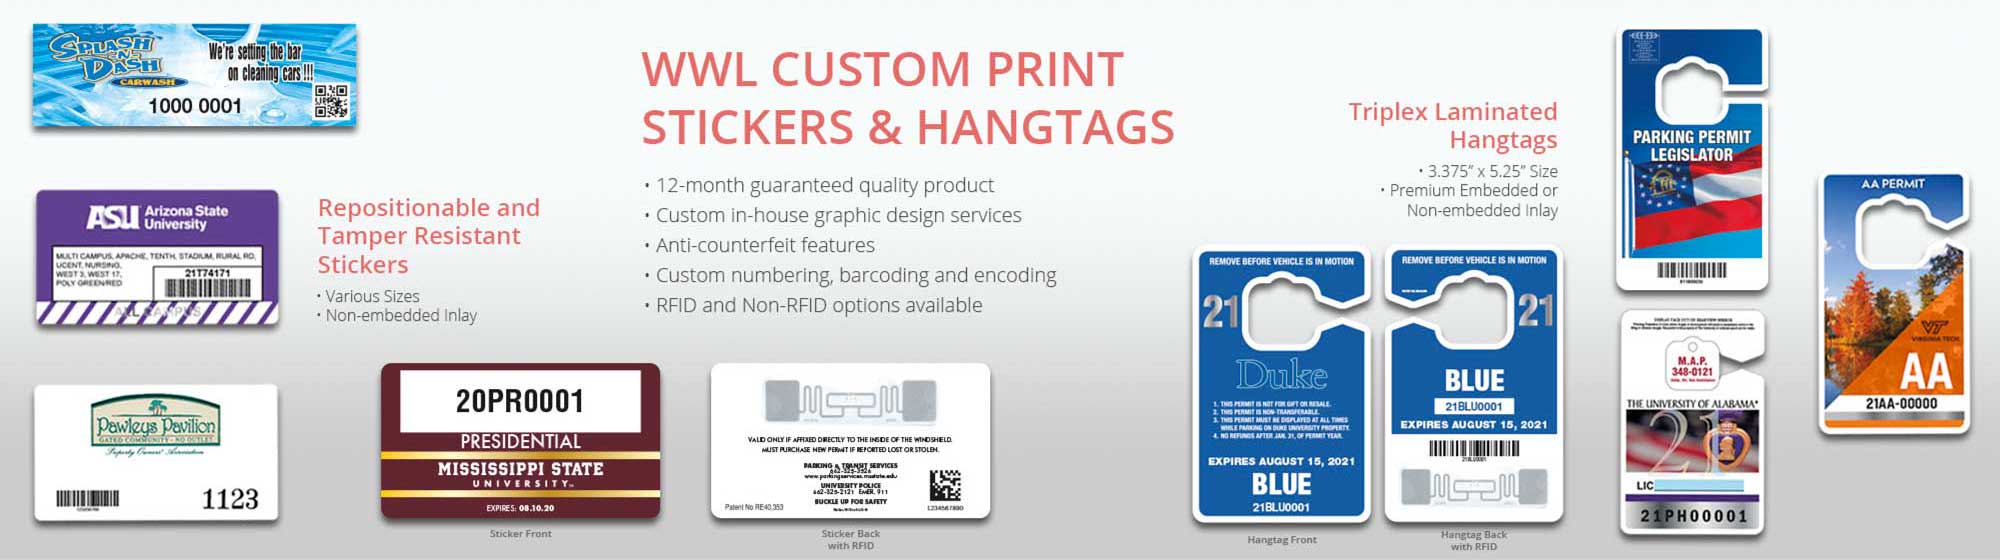 WWL RFID Custom Printing